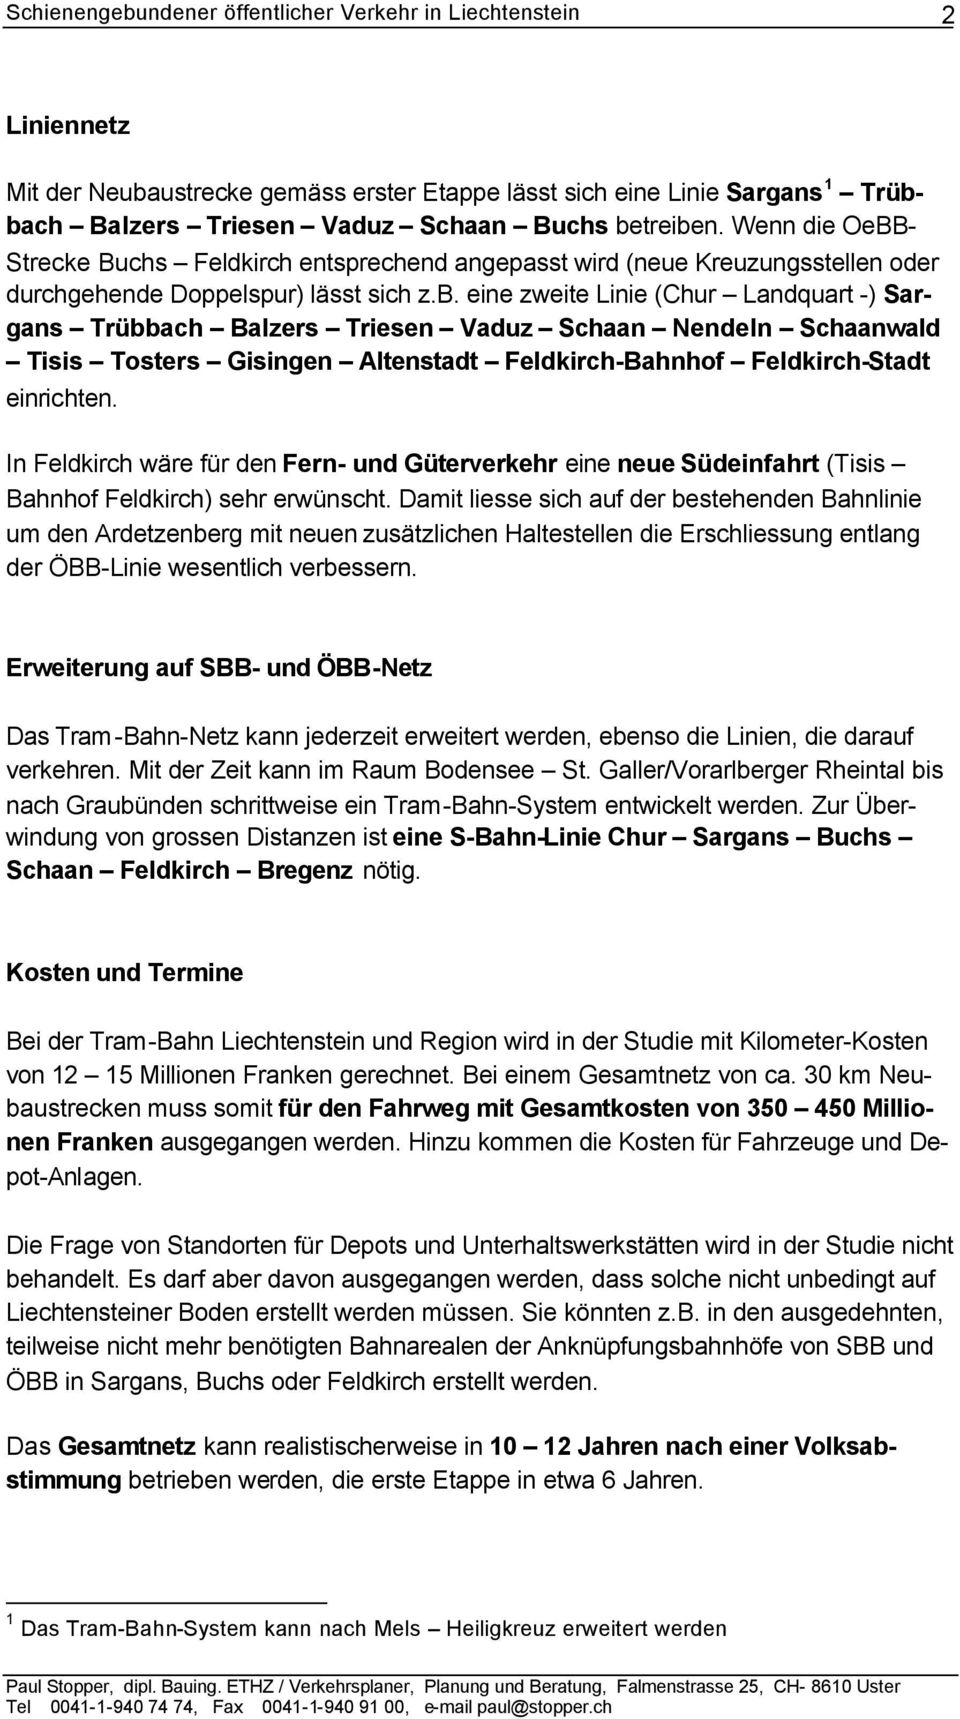 eine zweite Linie (Chur Landquart -) Sargans Trübbach Balzers Triesen Vaduz Schaan Nendeln Schaanwald Tisis Tosters Gisingen Altenstadt Feldkirch-Bahnhof Feldkirch-Stadt einrichten.